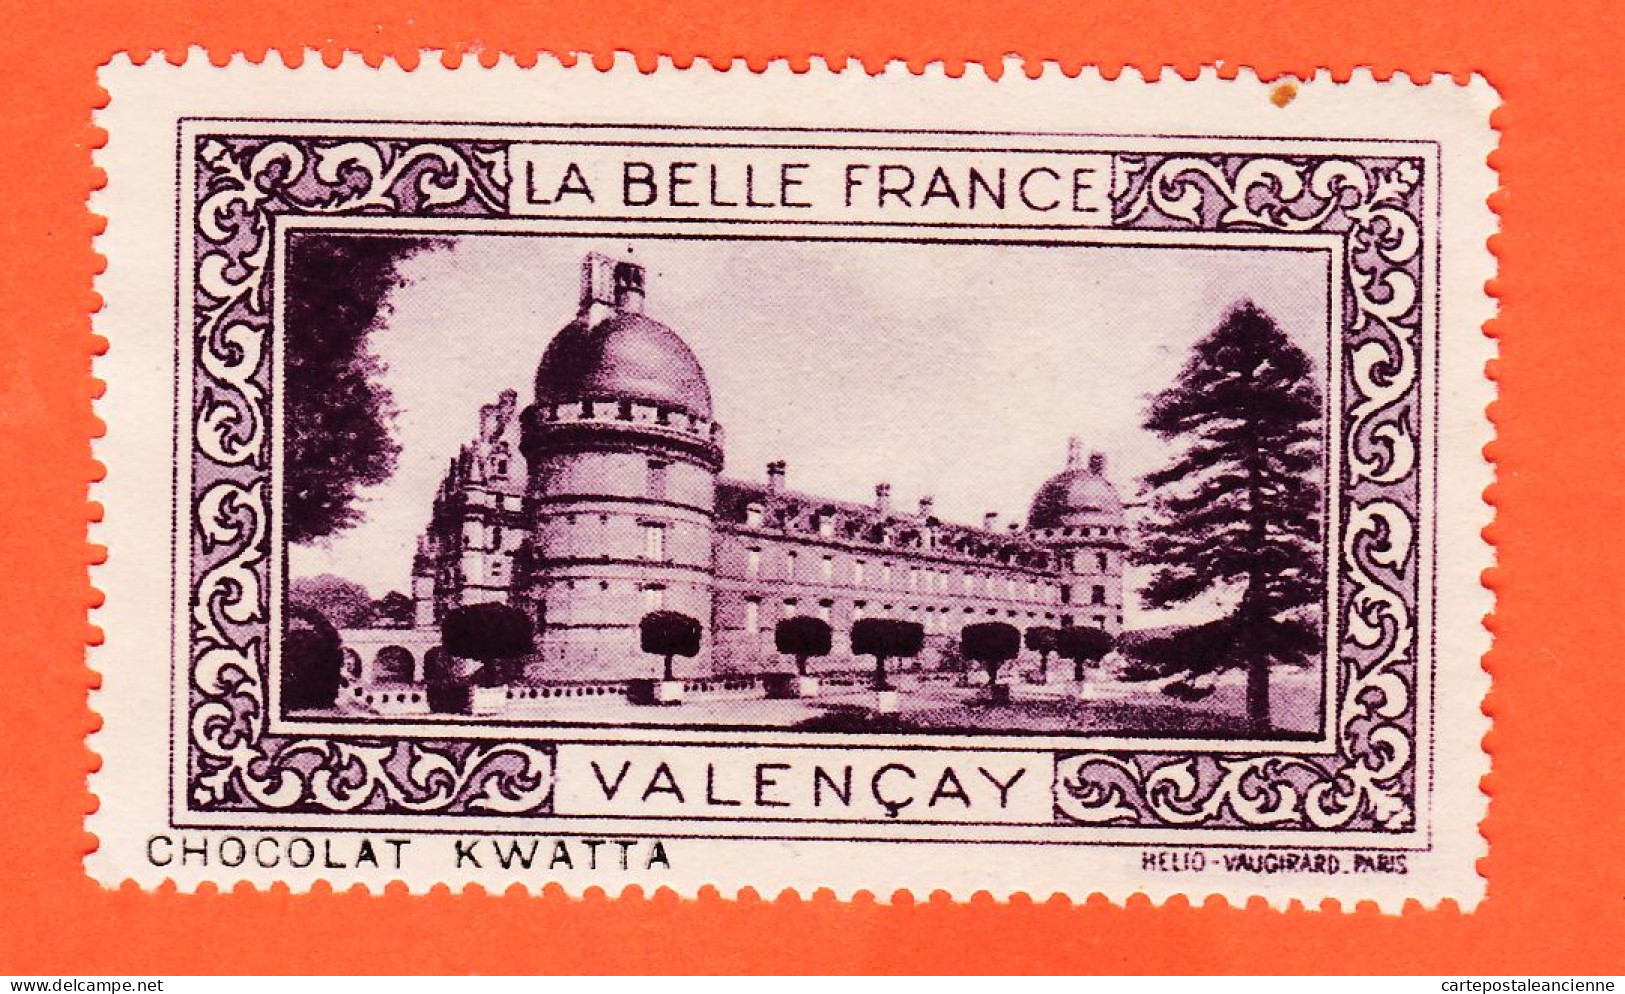 13024 / ⭐ ◉ VALENCAY 36-Indre Chateau Pub Chocolat KWATTA Vignette Collection LA BELLE FRANCE HELIO-VAUGIRARD - Tourismus (Vignetten)